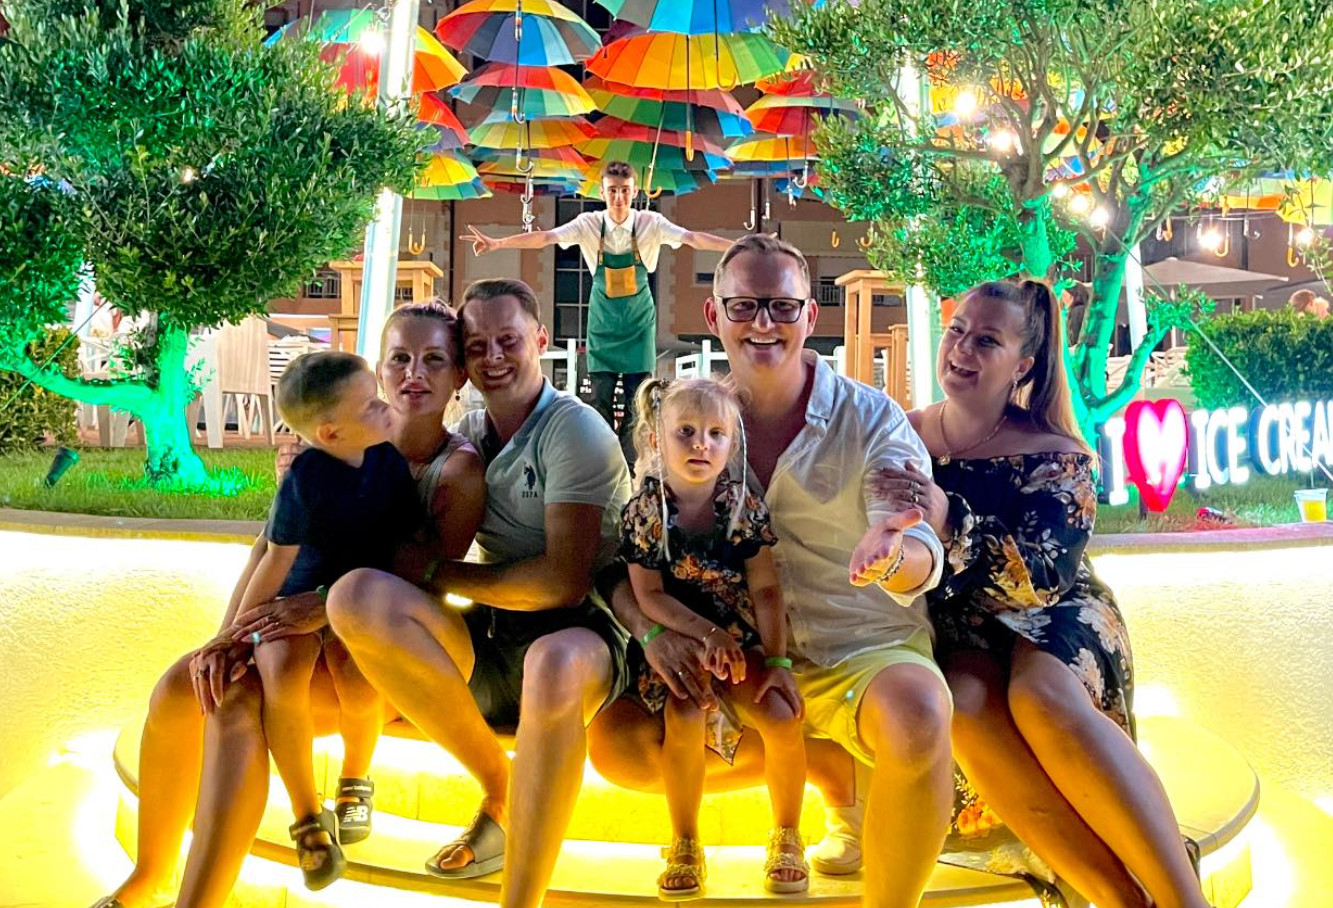 Marek i Dorota z zespołu Mig spędzają wakacje z rodzinami!